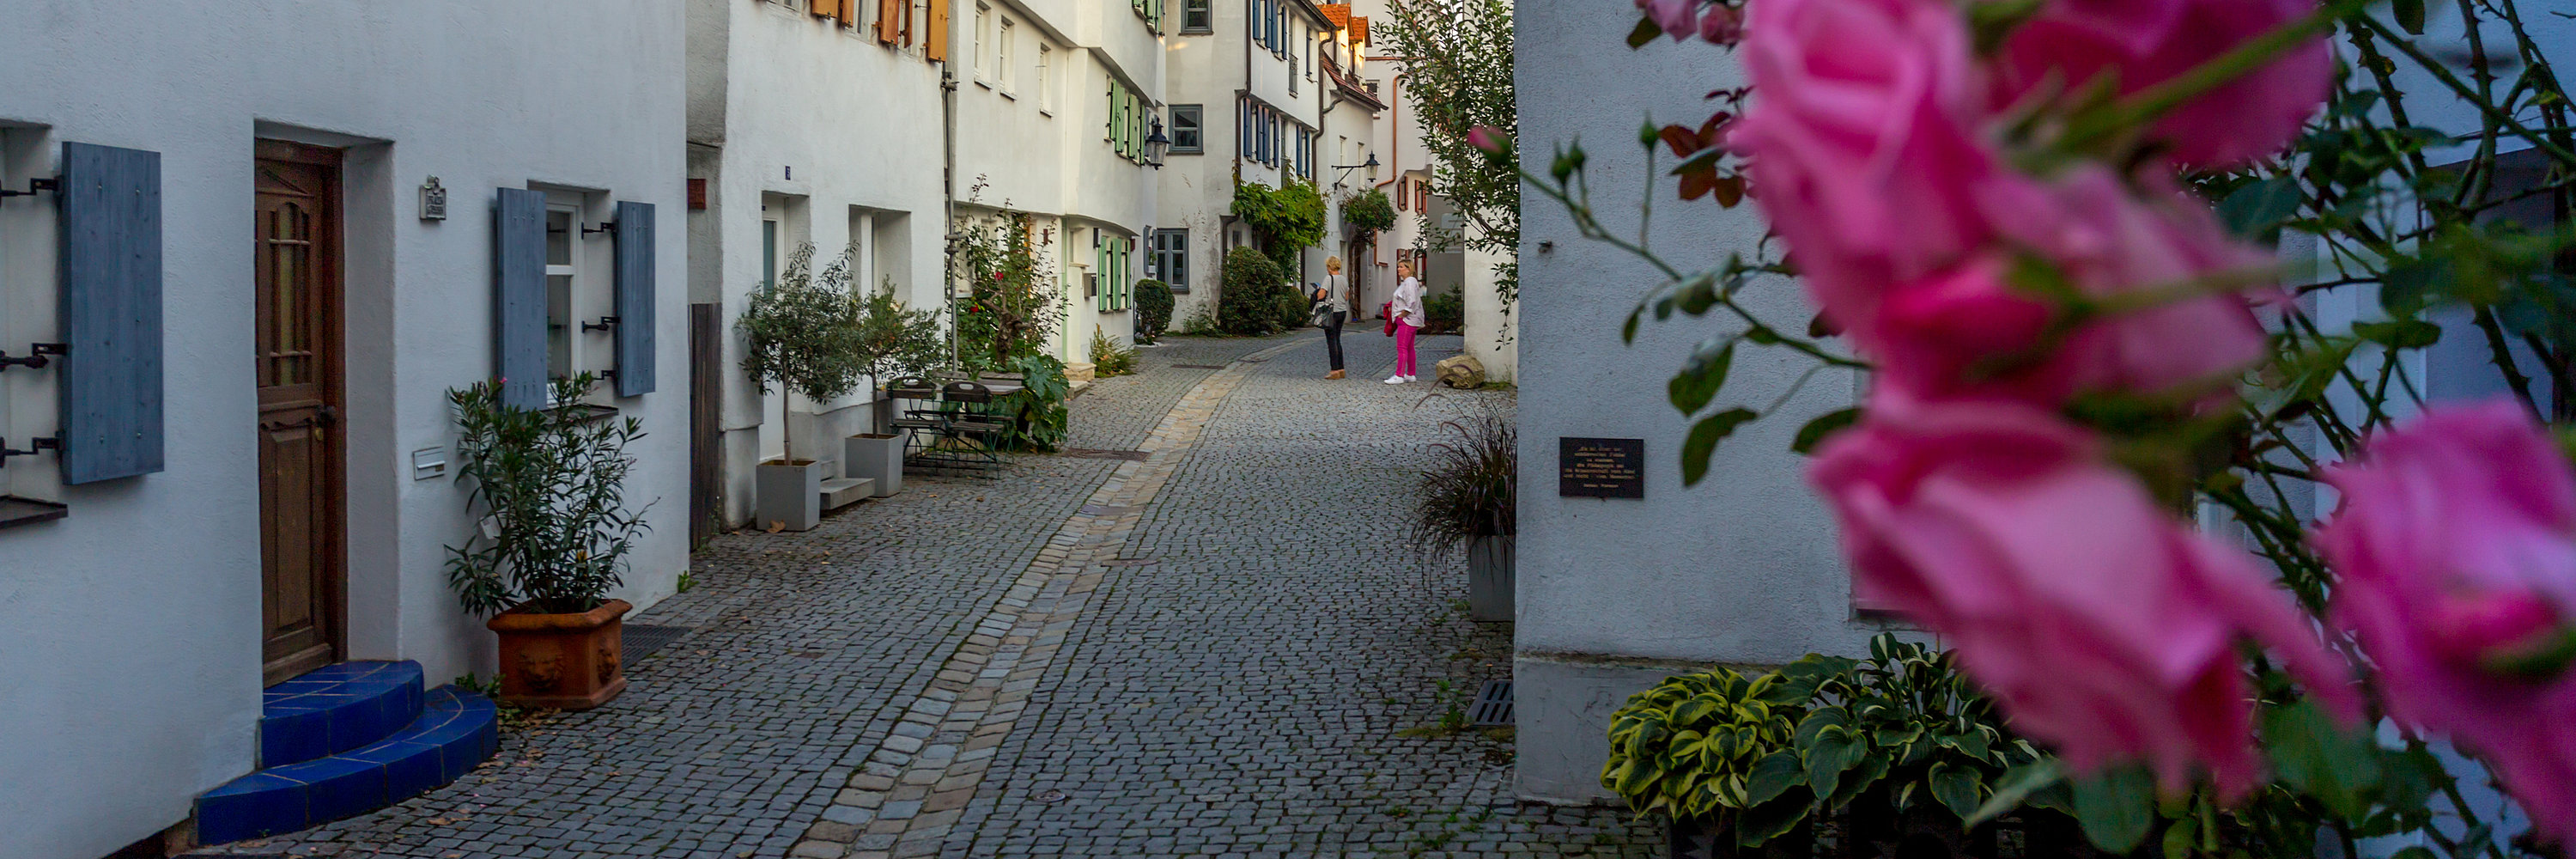 Frauengässchen. Foto: Philipp Röger für die Stadt Günzburg